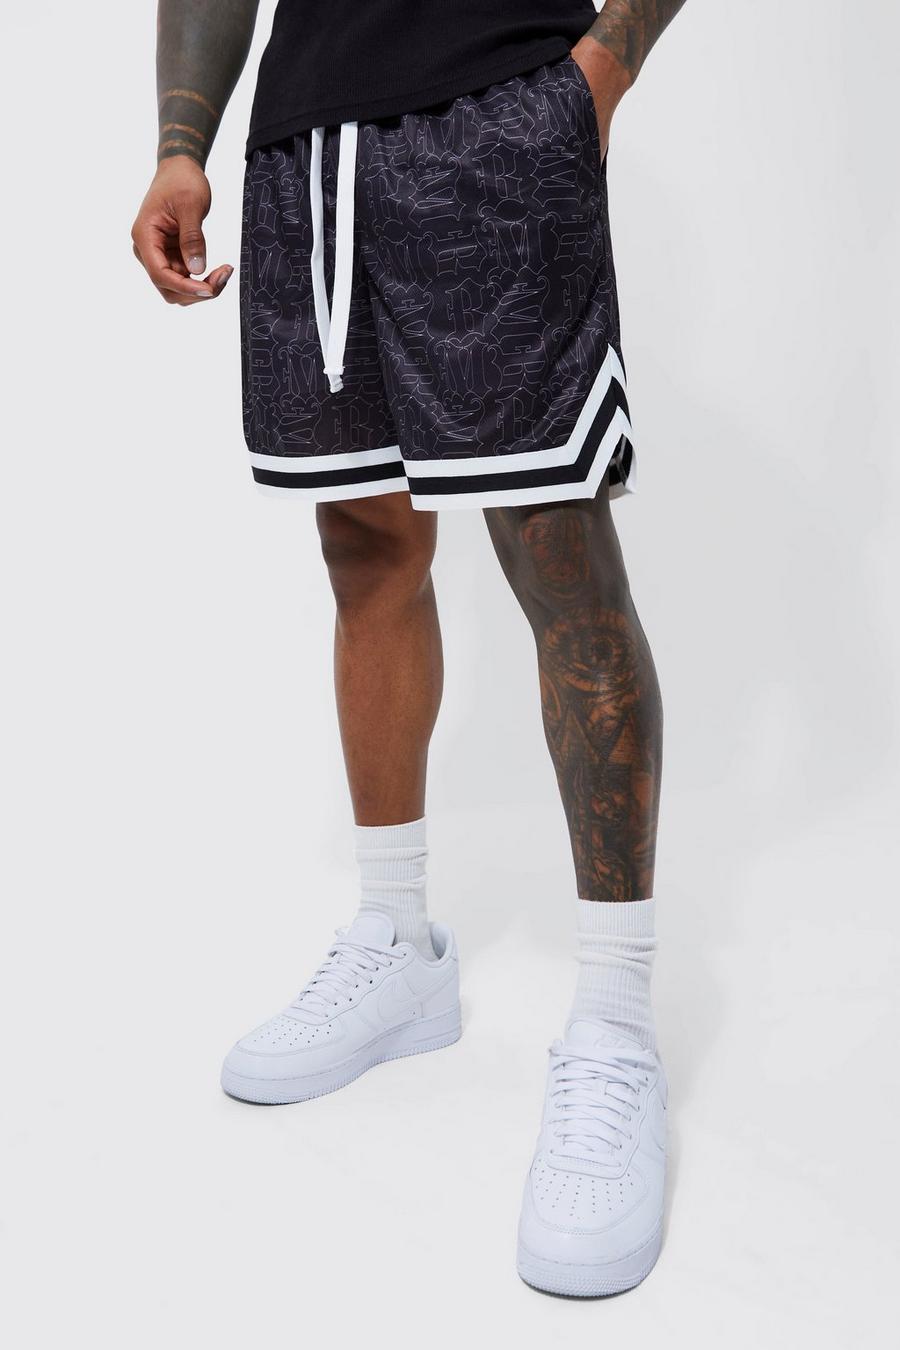 Pantalón corto de baloncesto holgado de malla BM, Black nero